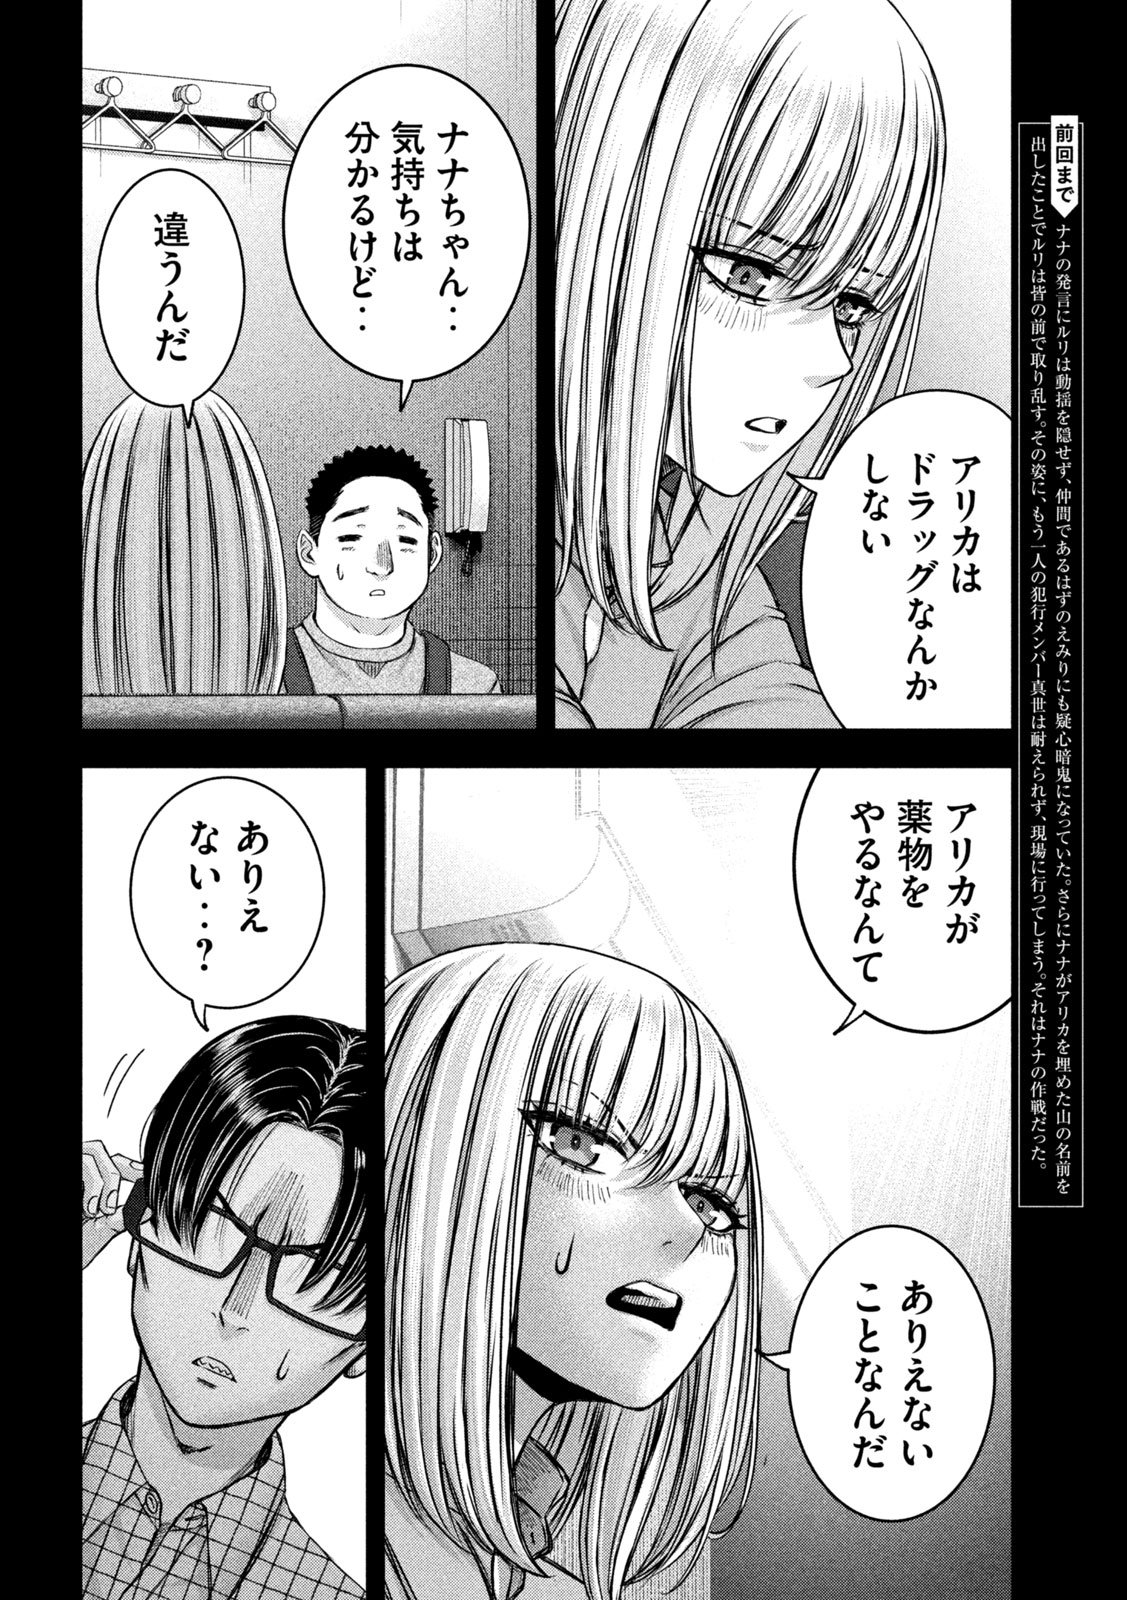 Watashi no Arika - Chapter 47 - Page 2